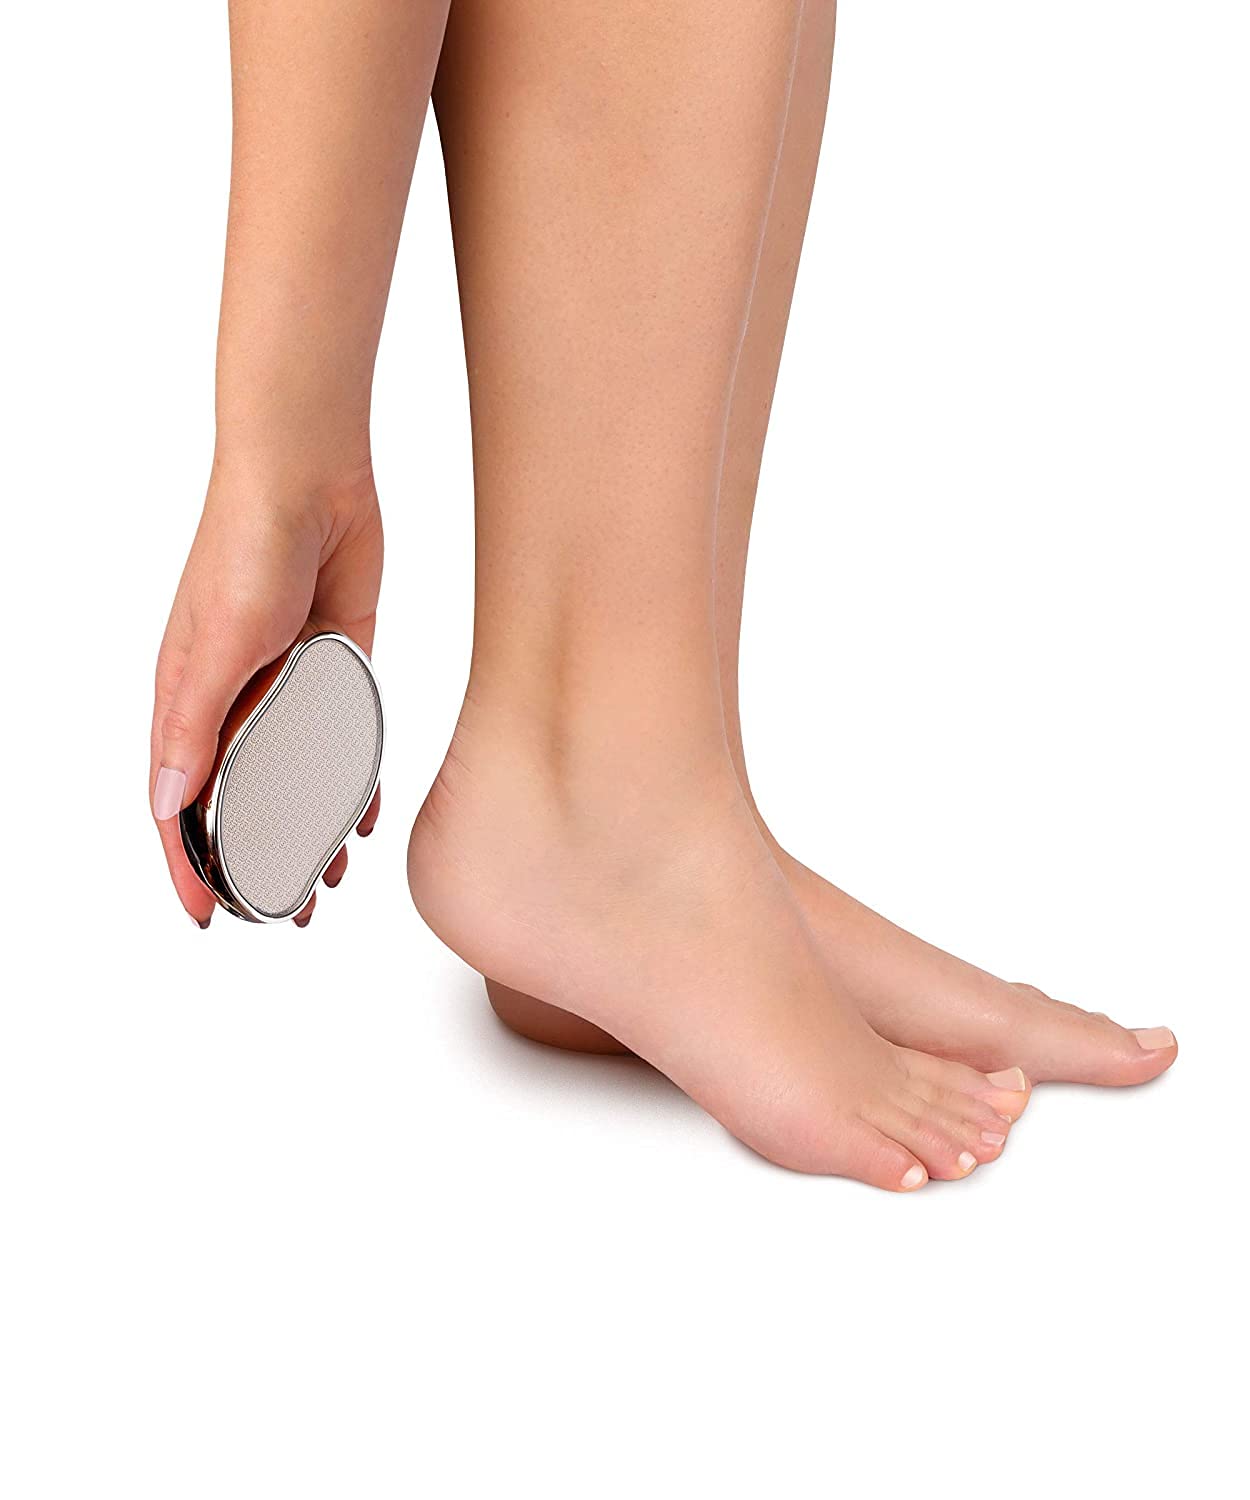 Glass Foot File Callus Remover - Foot Scrubber and Heel Scraper